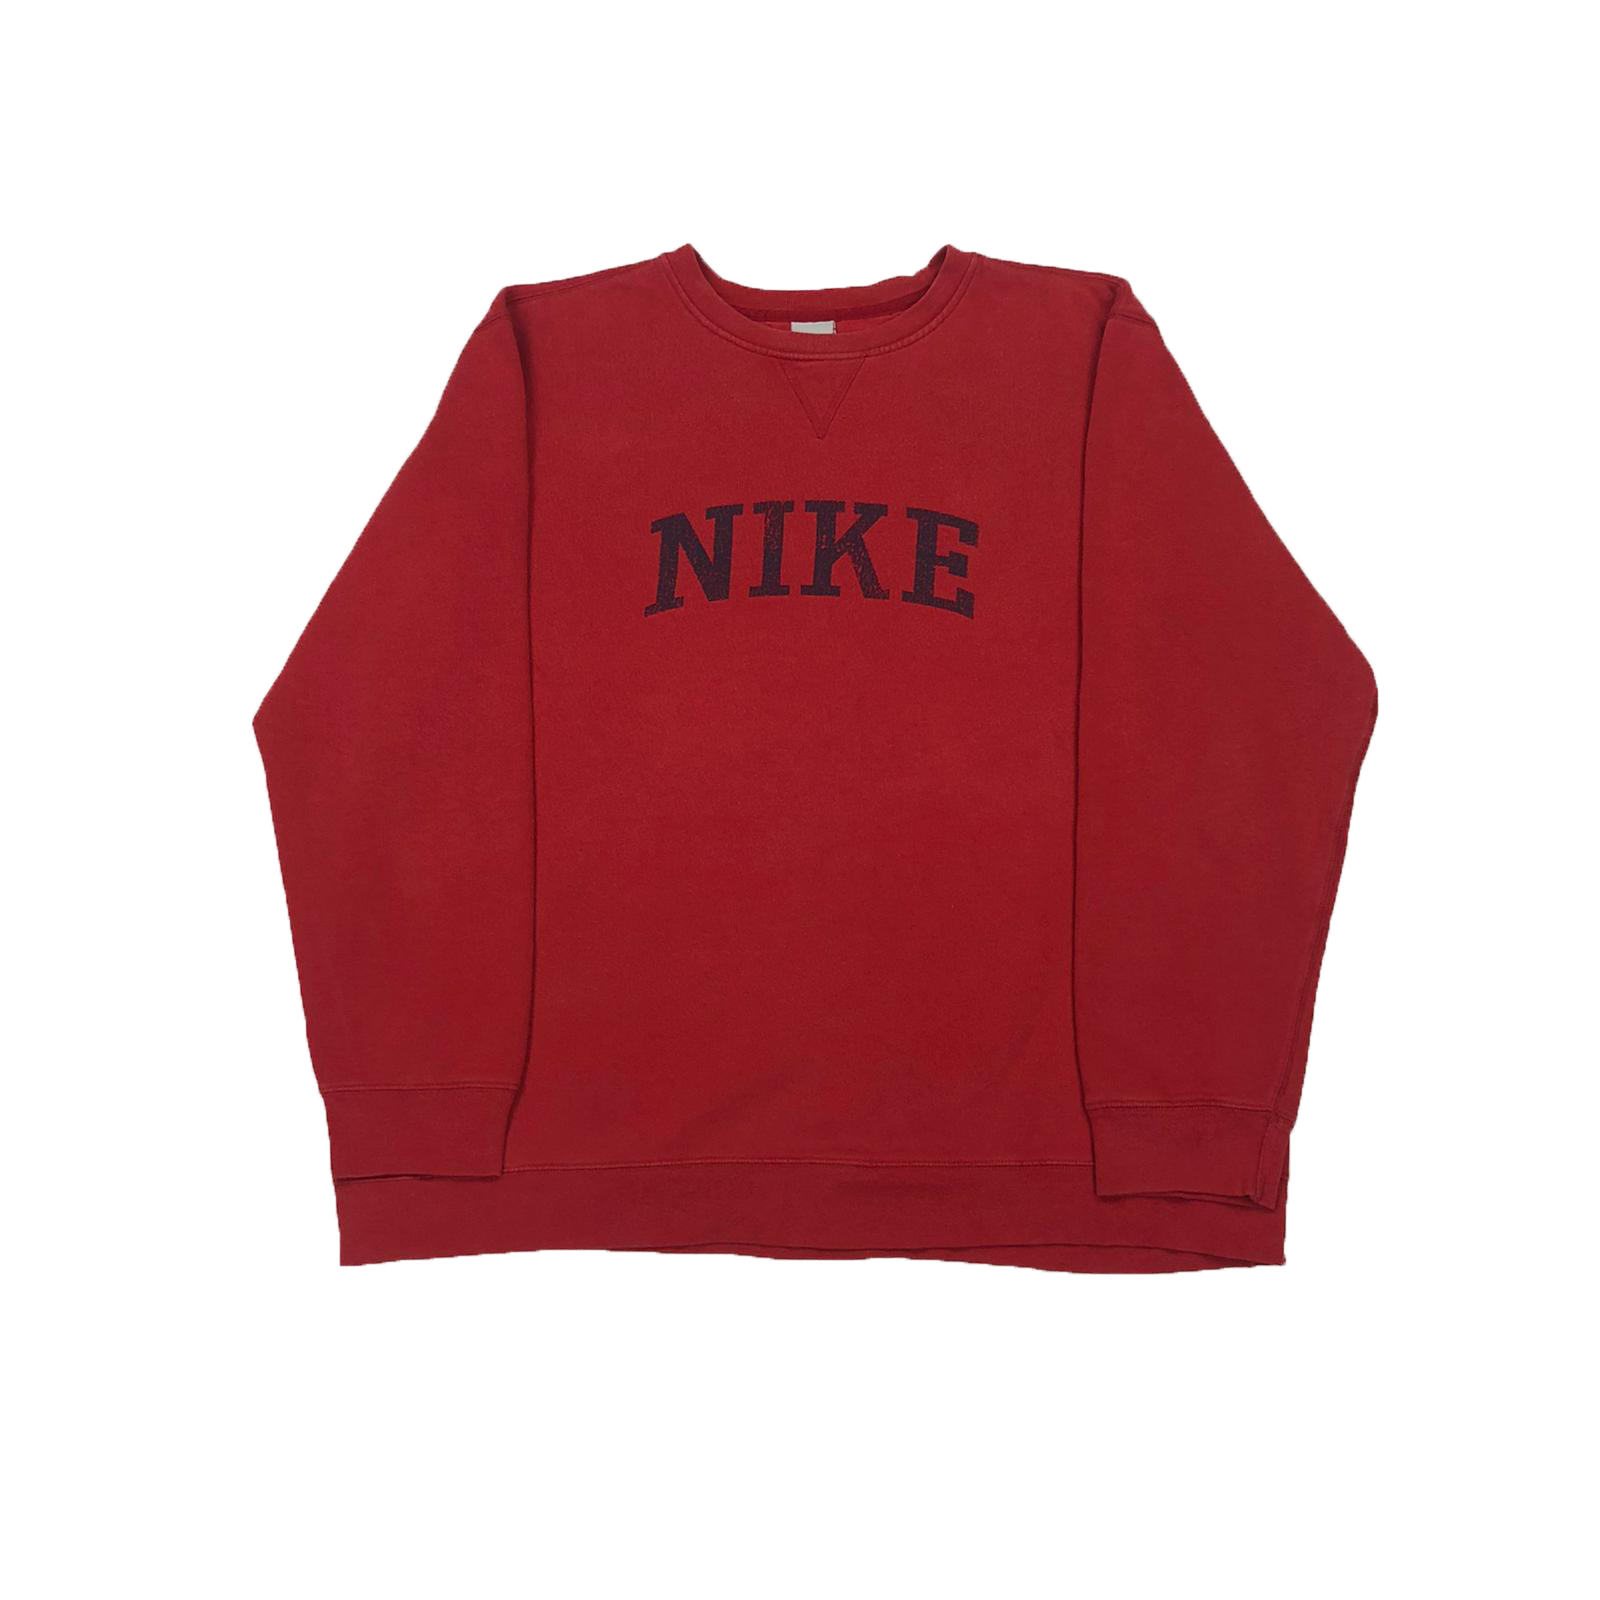 Nike sweatshirt